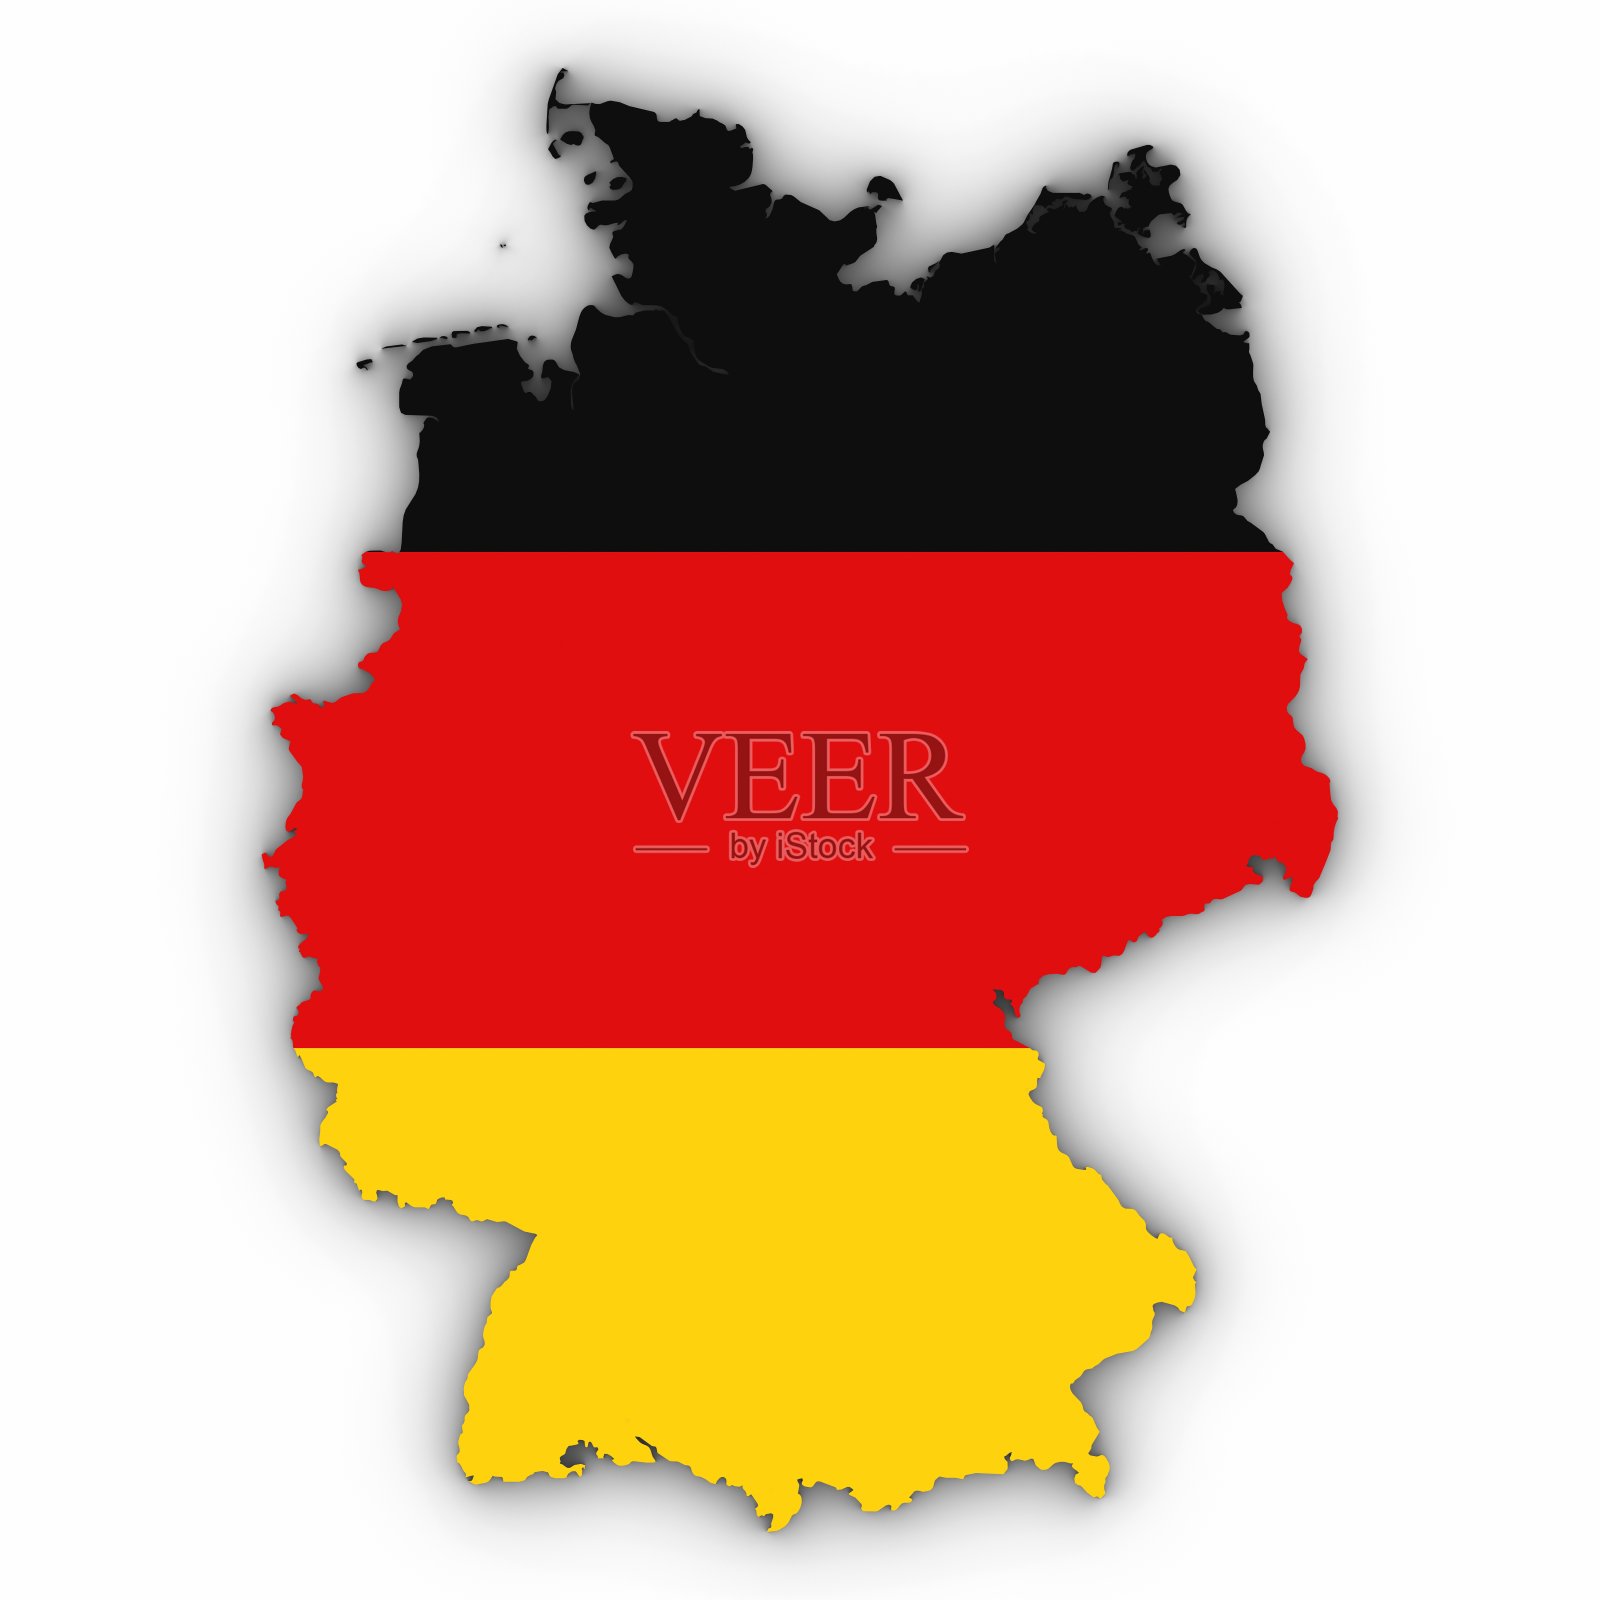 德国政区图 - 德国地图 - 地理教师网